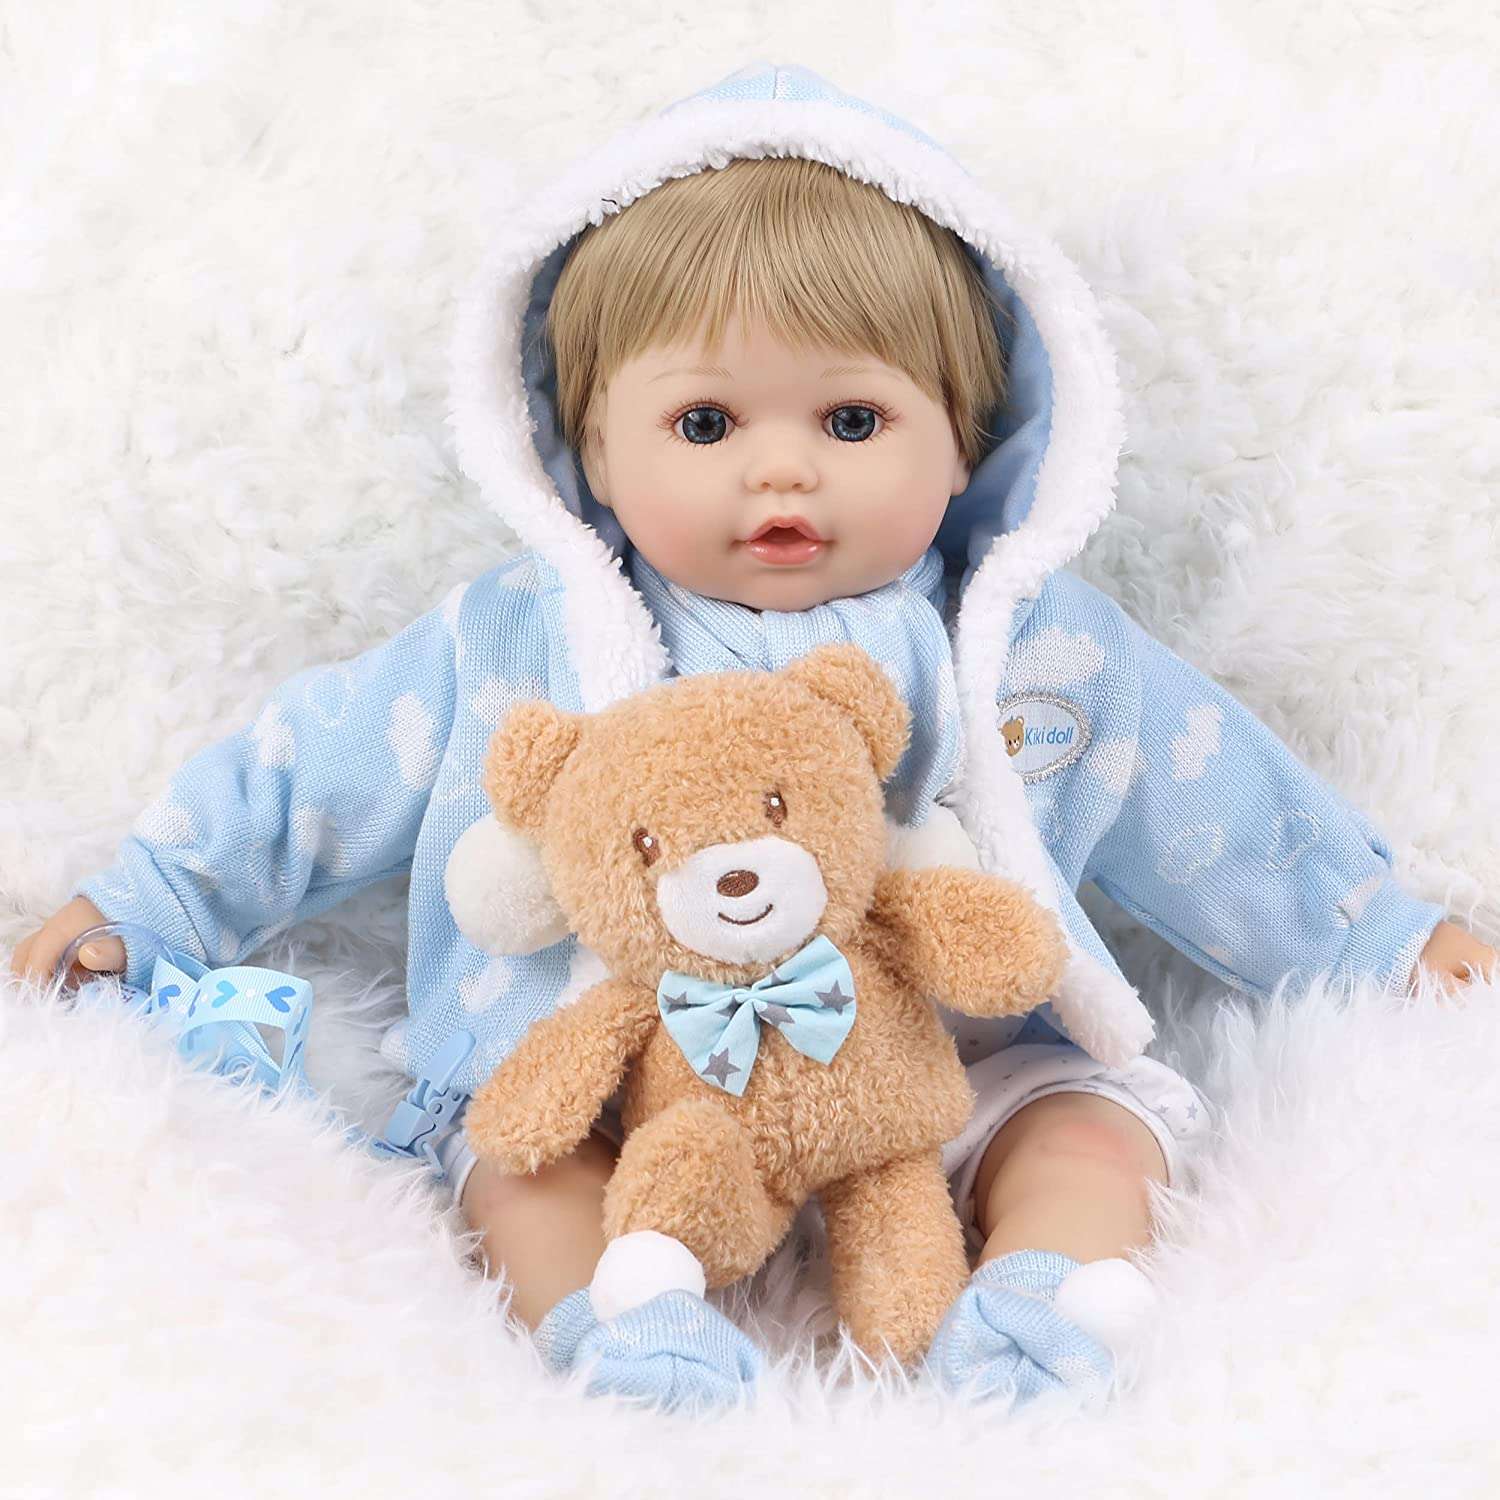 Кукла Реборн QA BABY Марти мальчик большой пупс набор игрушки для девочки 42 см 45005 - фото 1